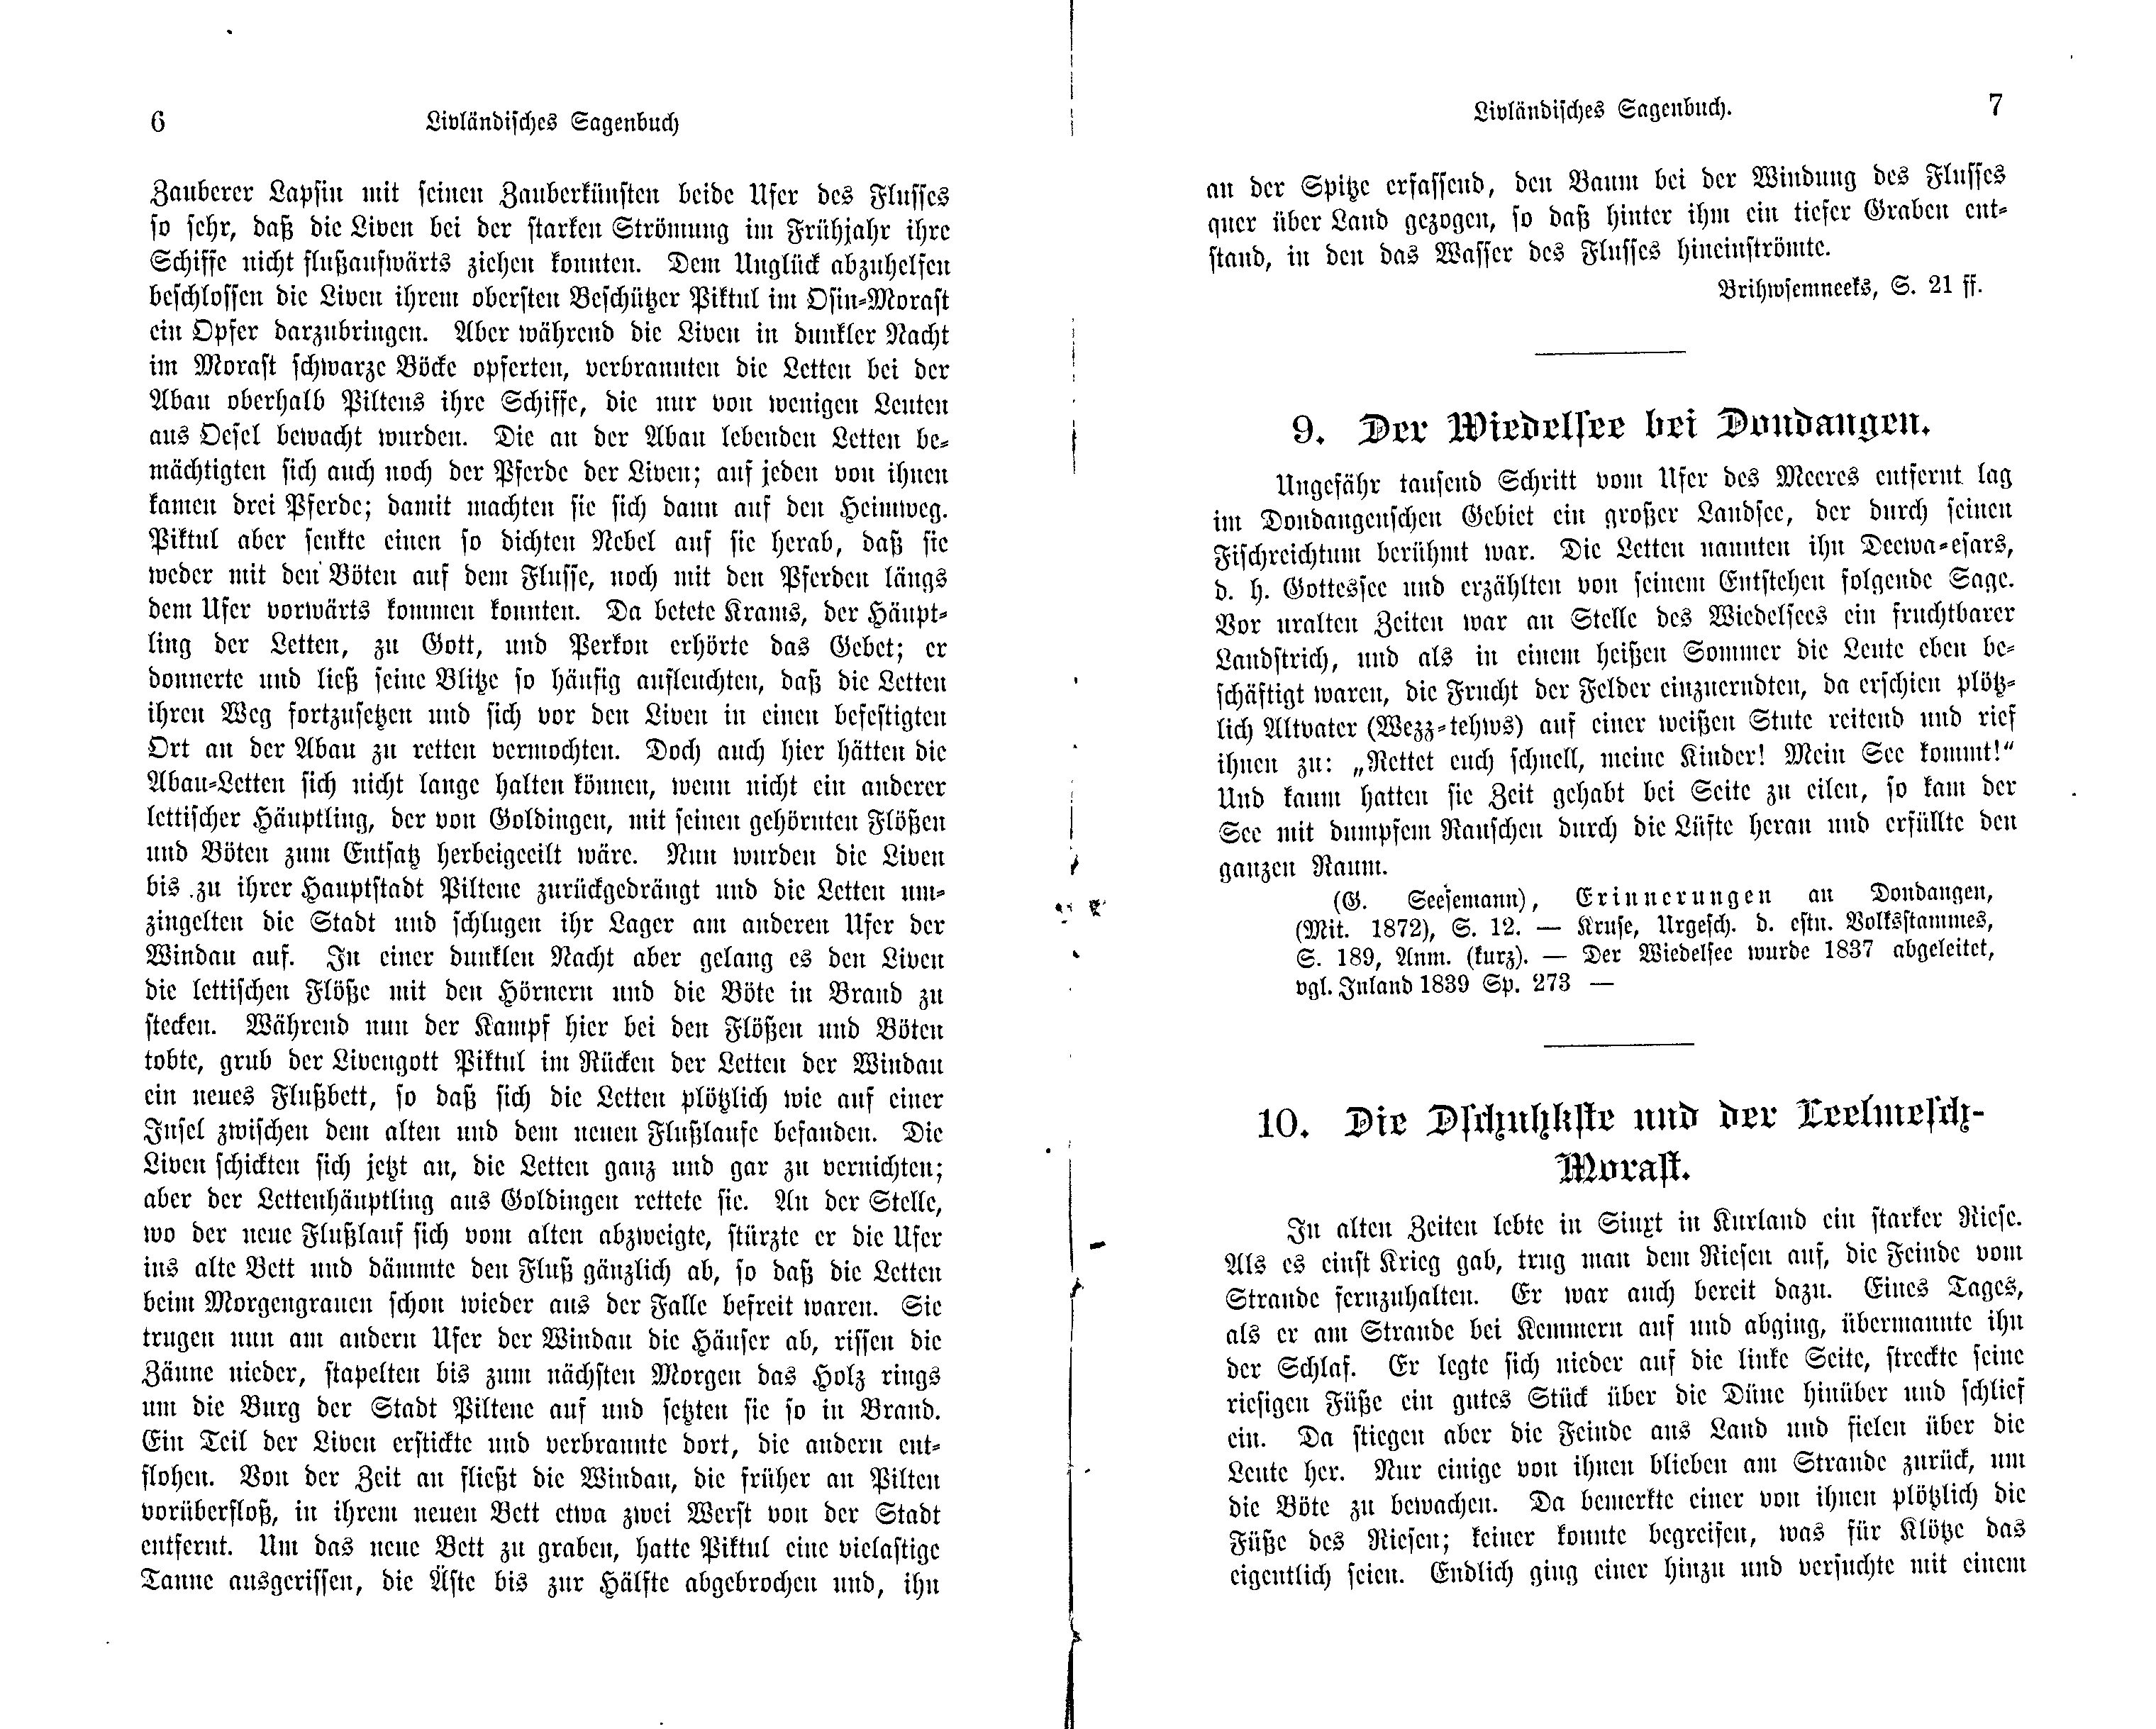 Die Dschuhkste und der Leelmesch-Morast (1897) | 1. (6-7) Основной текст